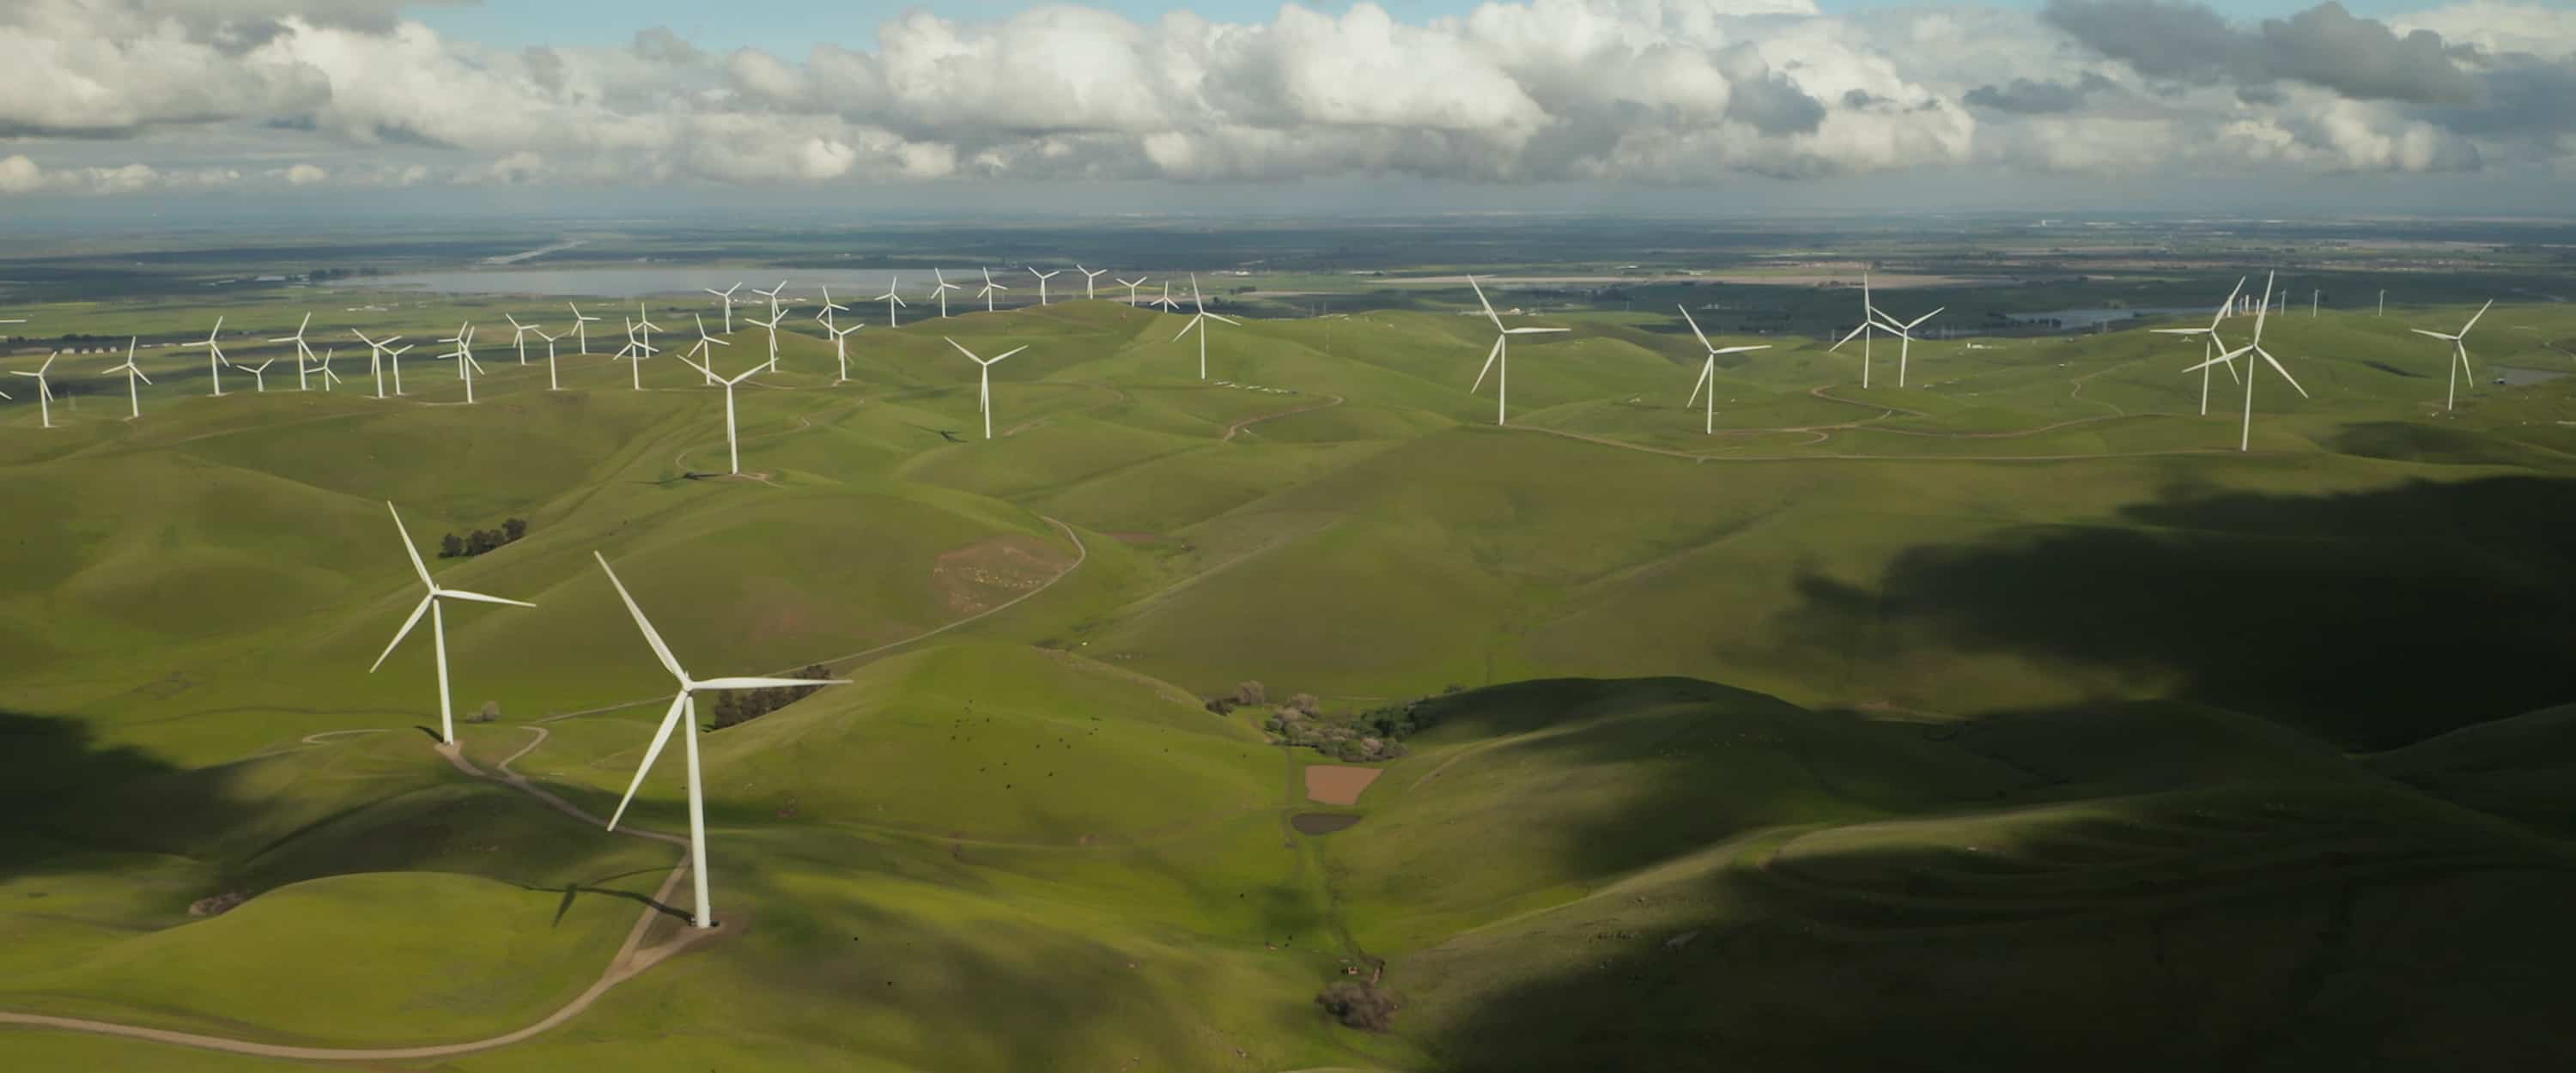 wind farm on a field